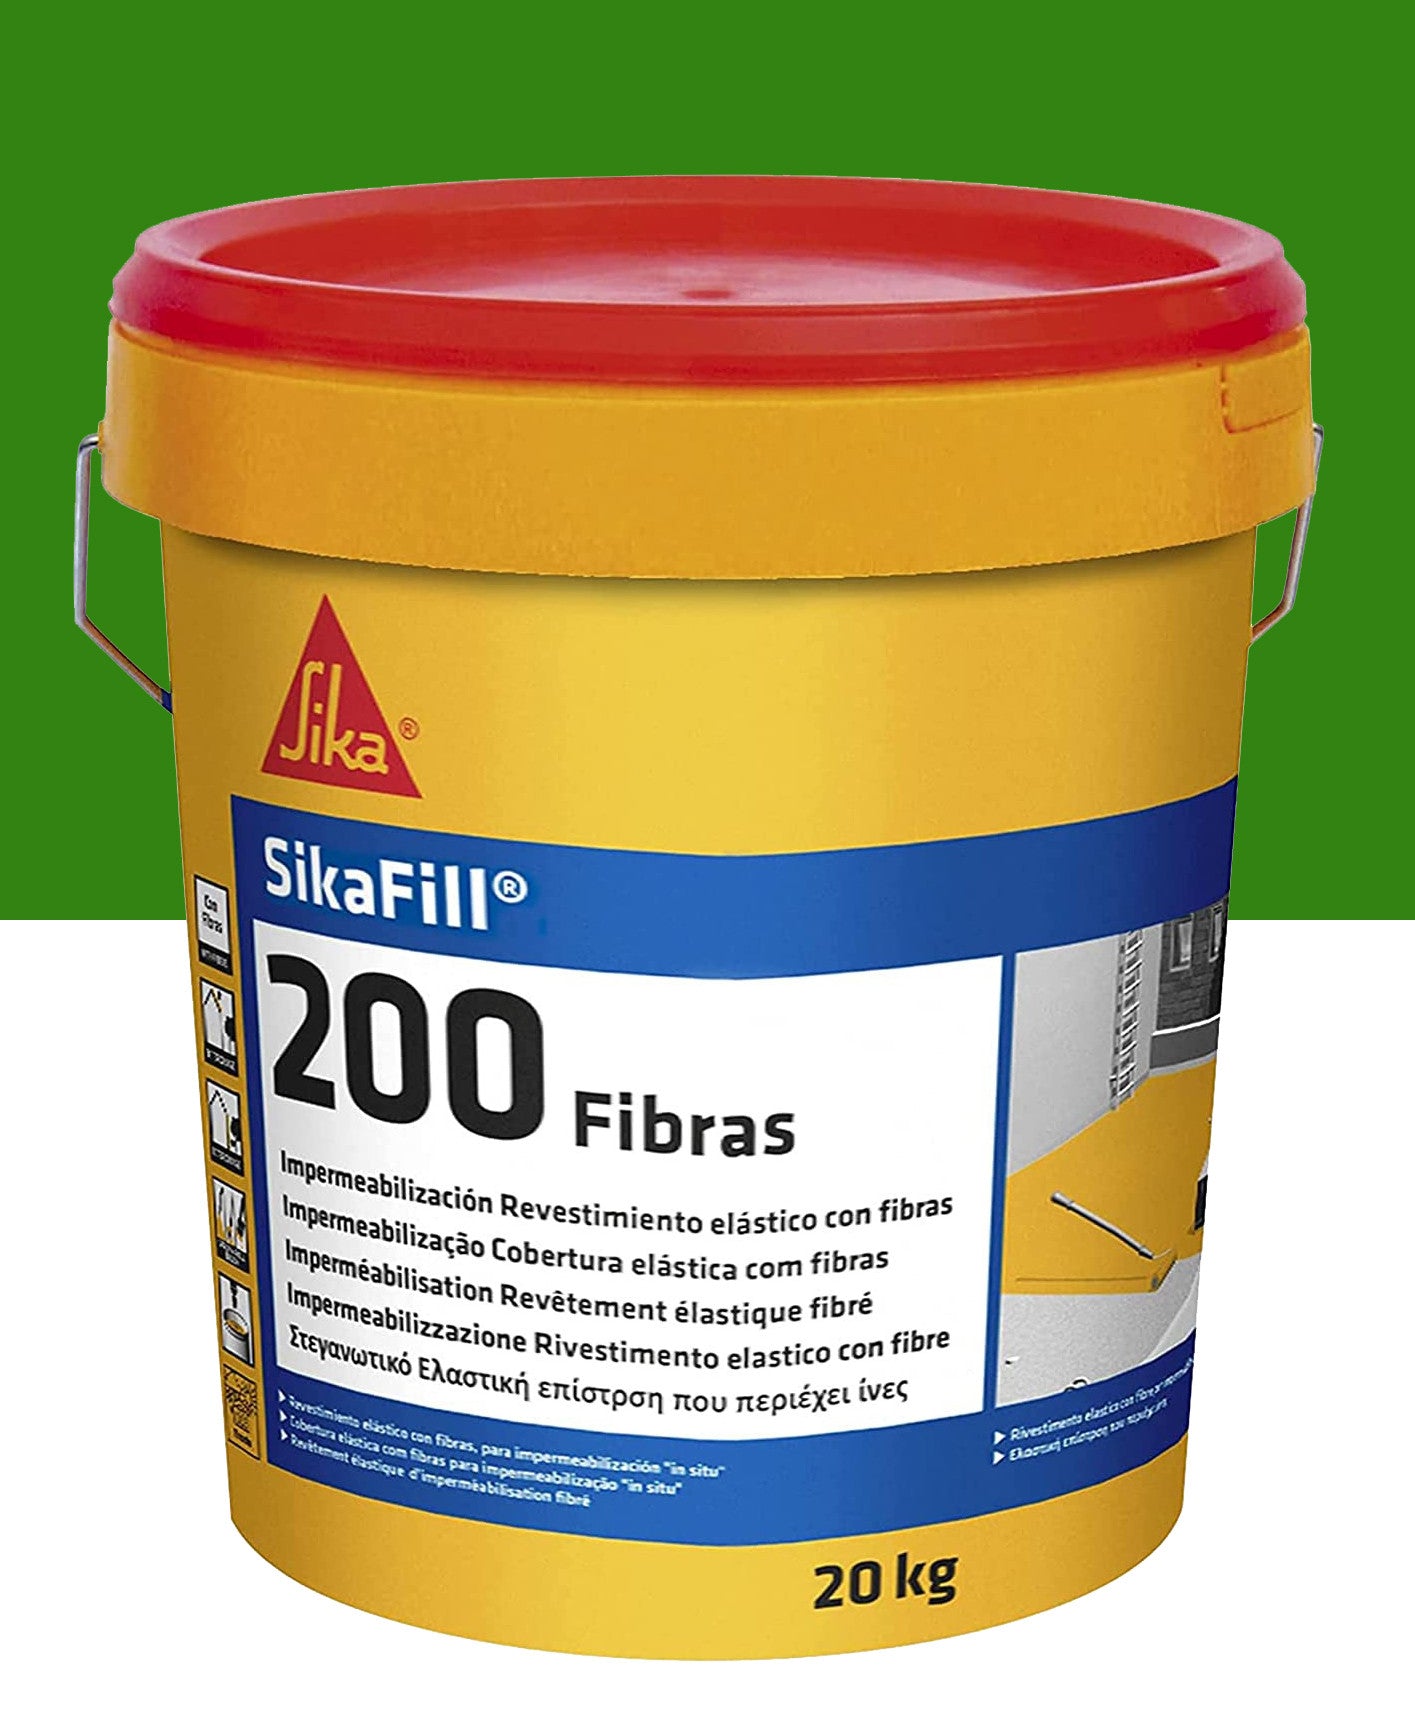 Bote Pintura Impermeable Sikafill-200 Fibras 20kg SIKA - 8